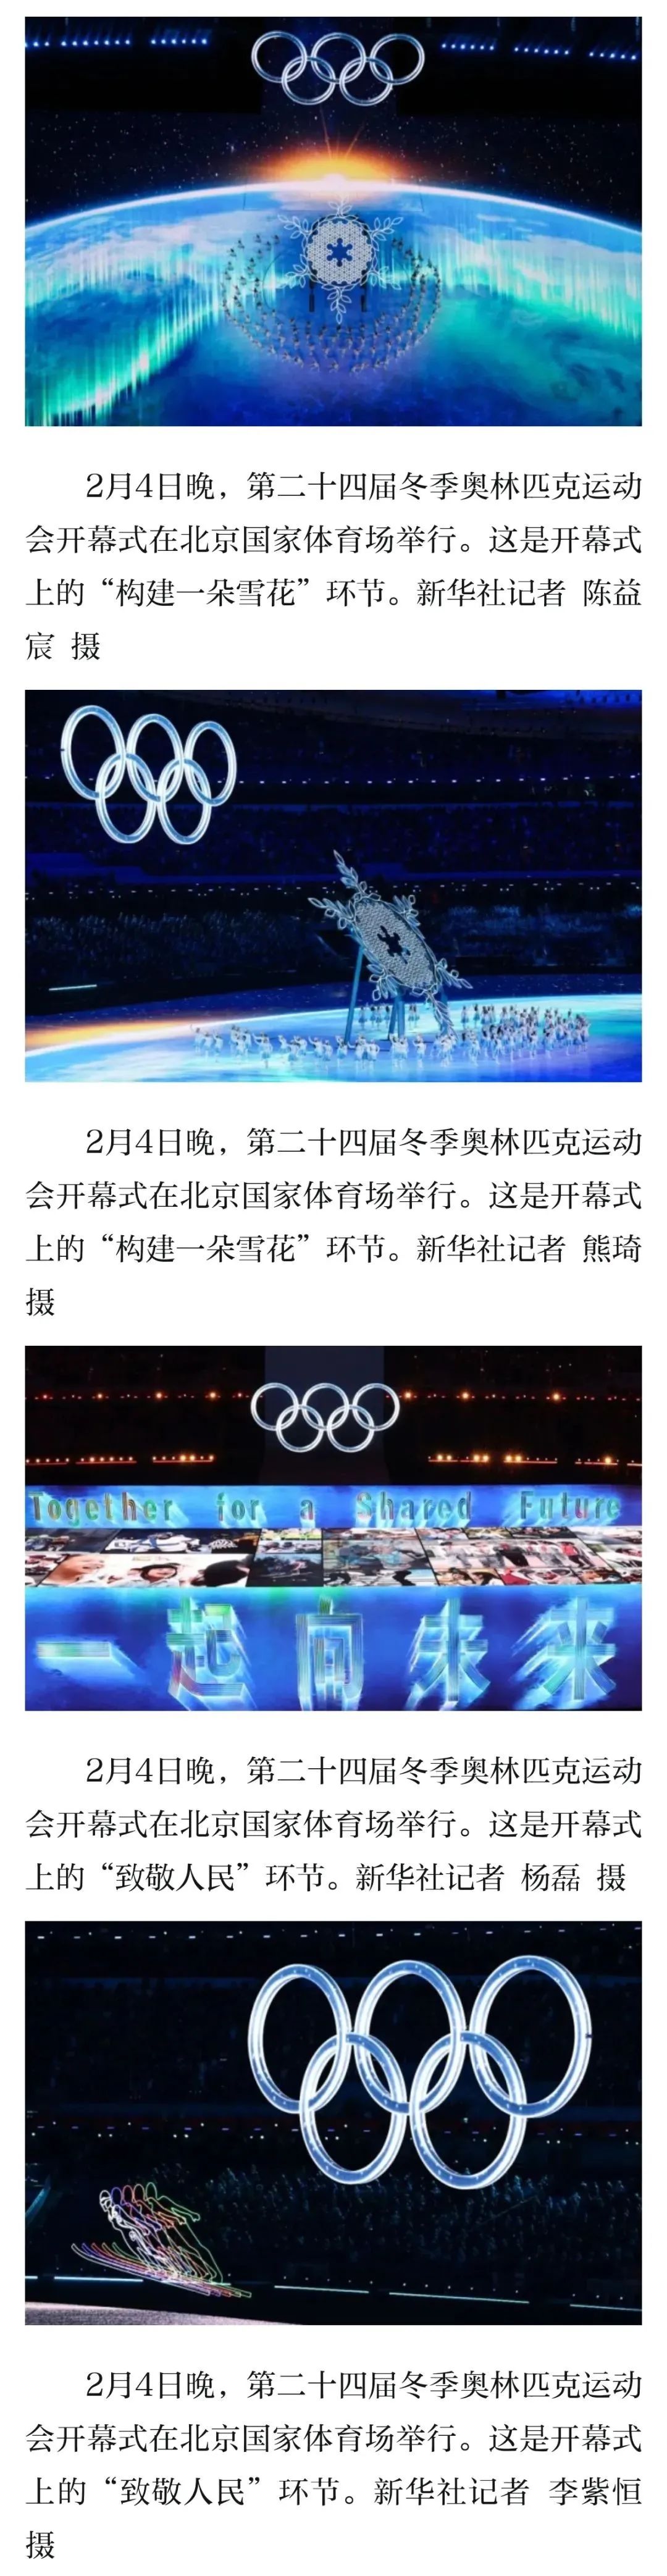 北京冬奥会城市景观布置凸显冬奥元素和民俗元素小学英语阅读课